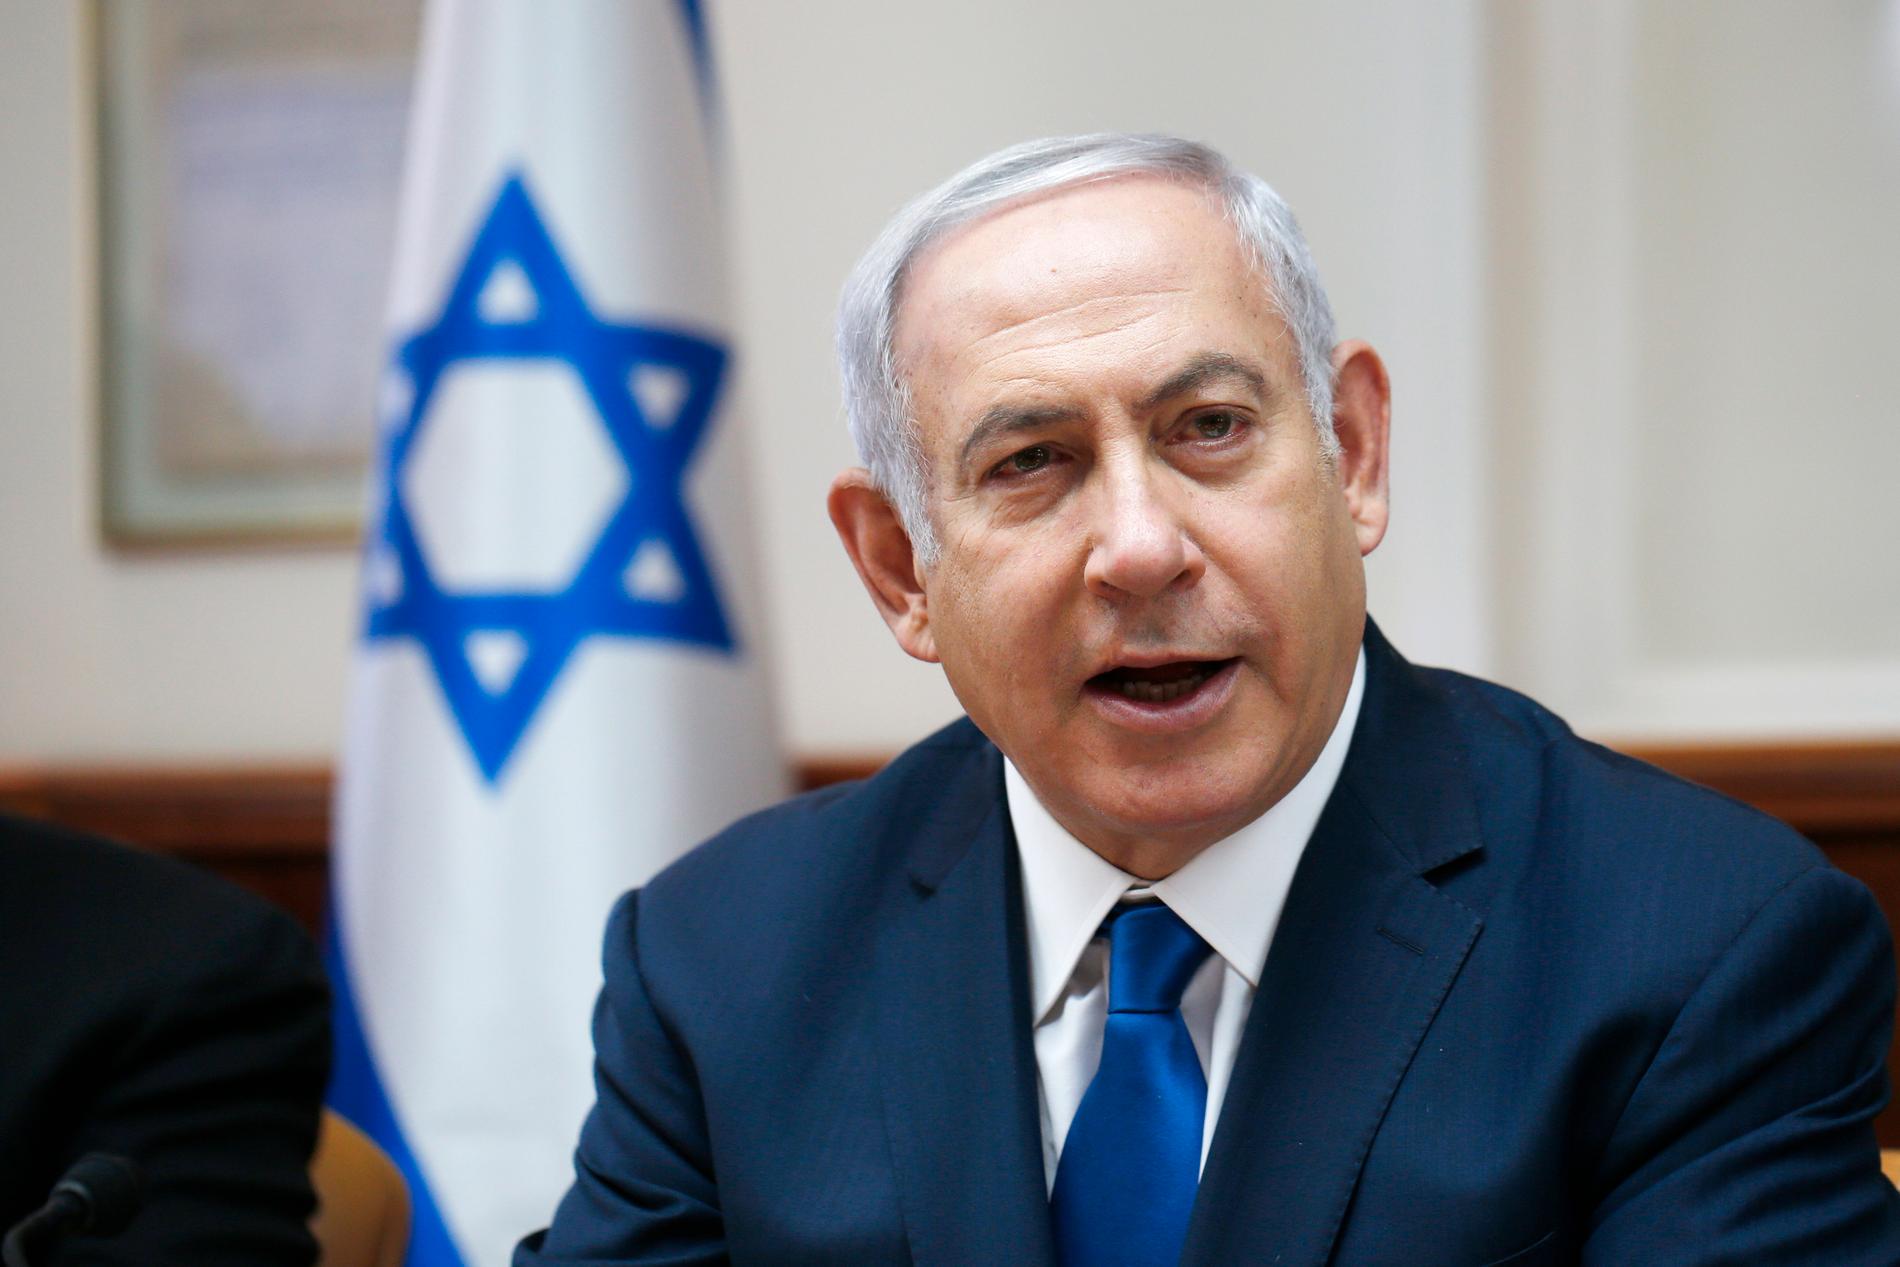 Benjamin Netanyahu, premiärminister i Israel vars parlament har antagit en ny kontroversiell lag som bland annat definierar landet som "det judiska folkets nationalstat". Arkivbild.